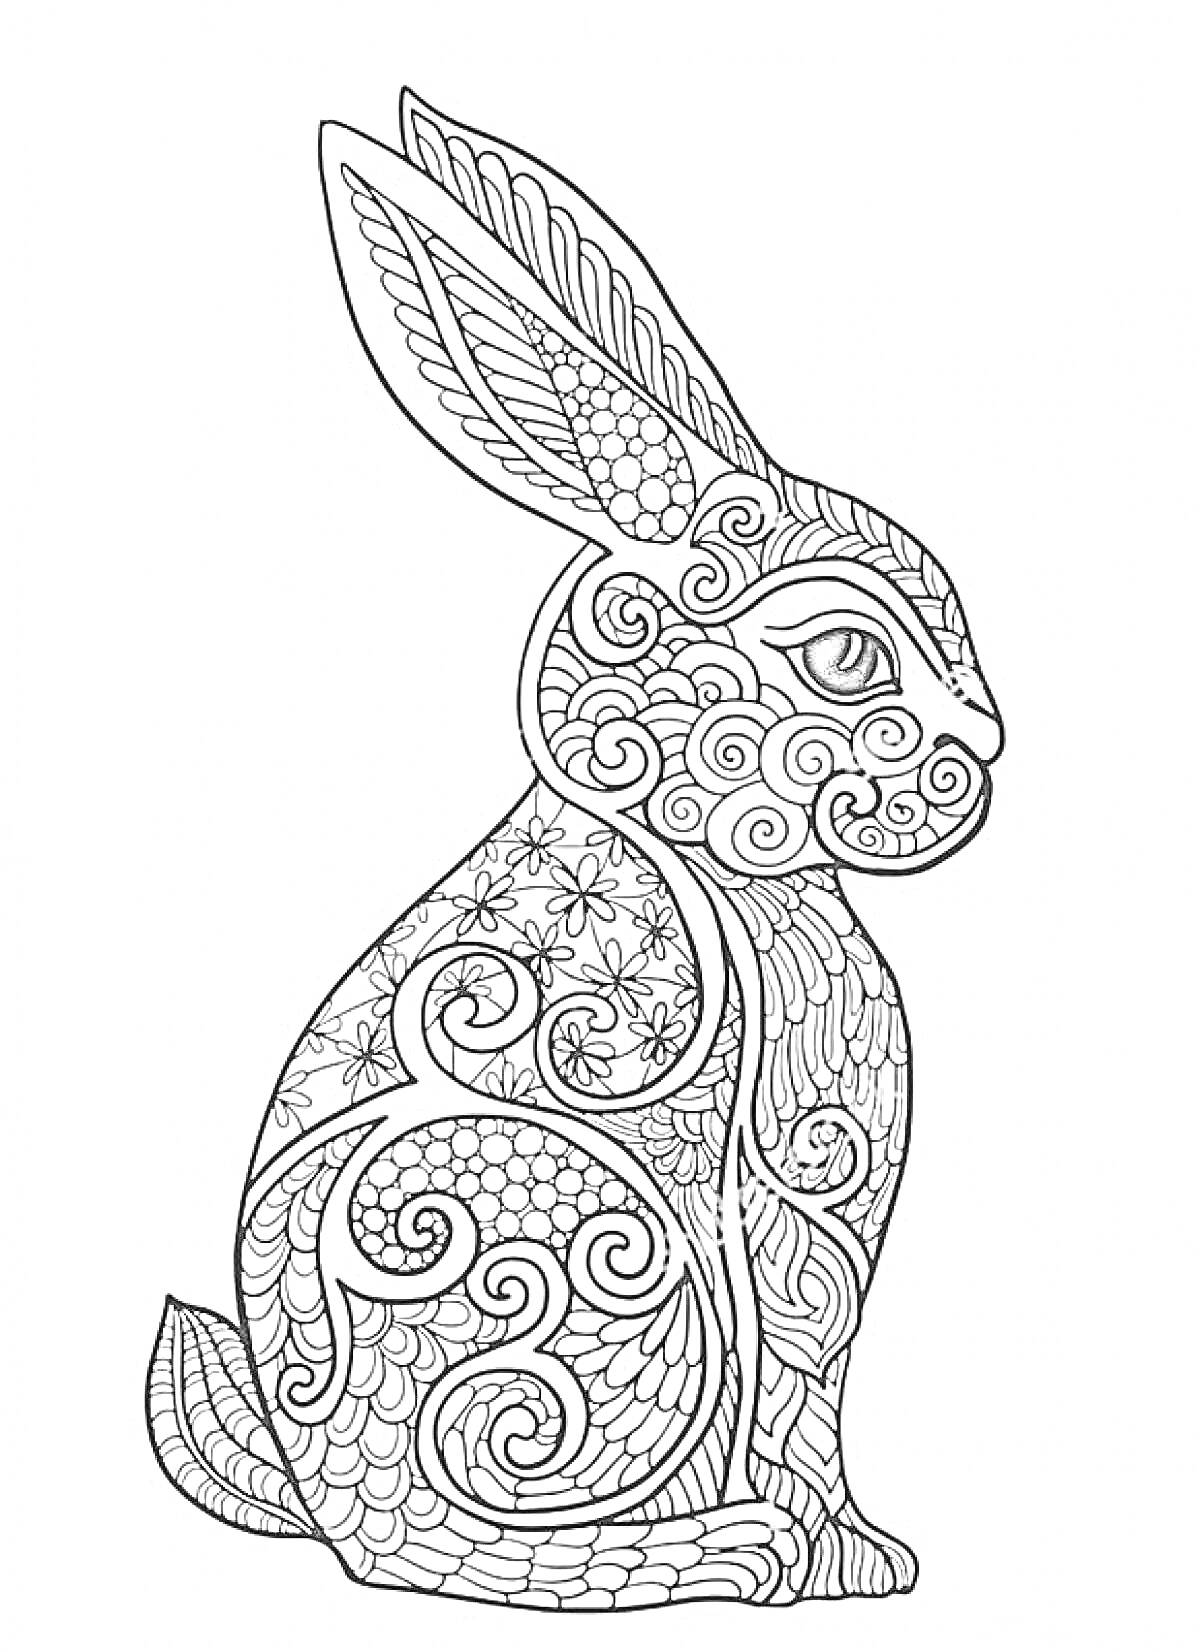 Кролик с орнаментом, включающим завитки, цветы и узоры